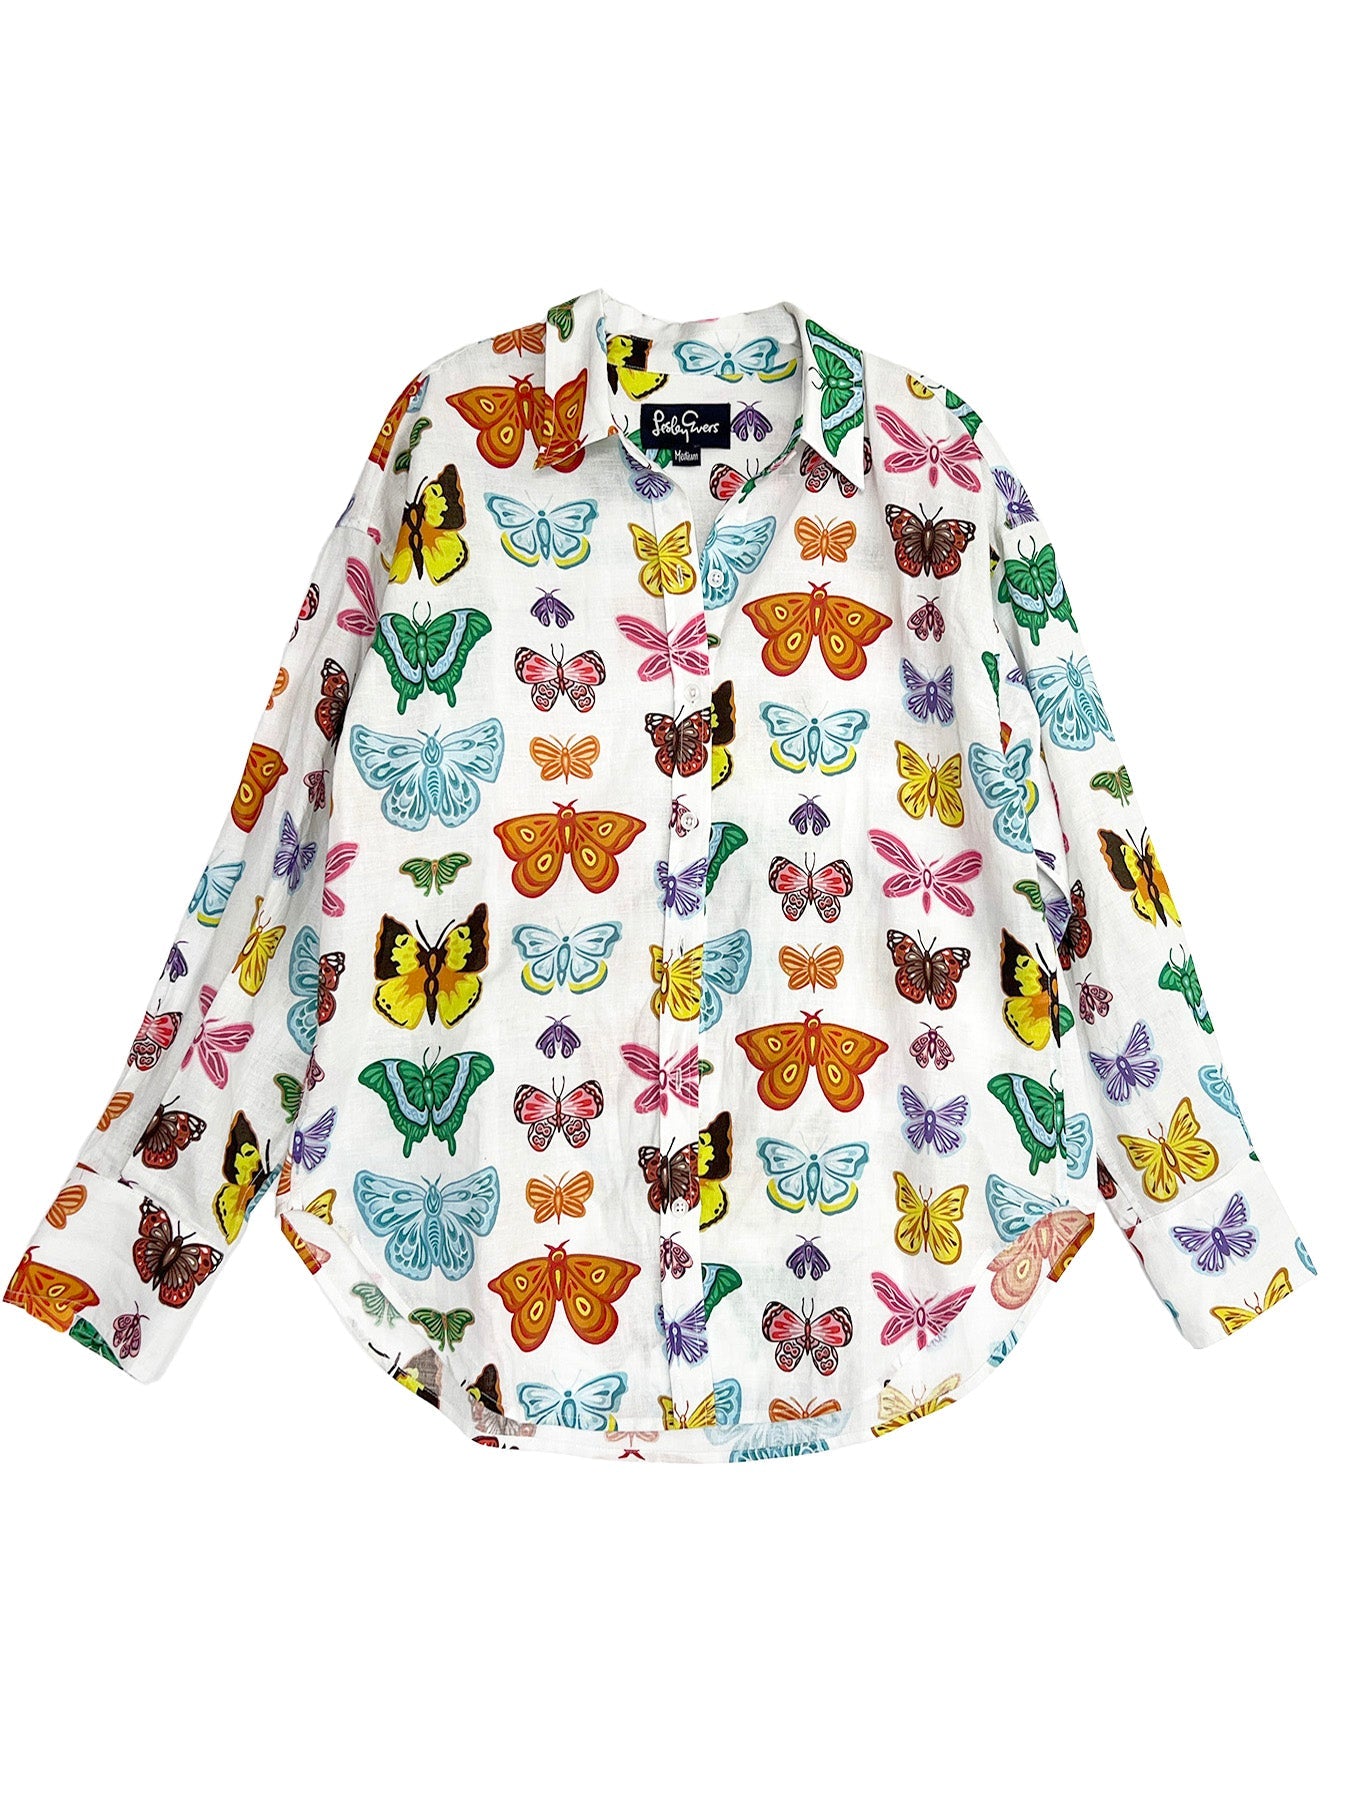 DAWN shirt Butterflies and Moths - Lesley Evers-Best Seller-blouse-DAWN